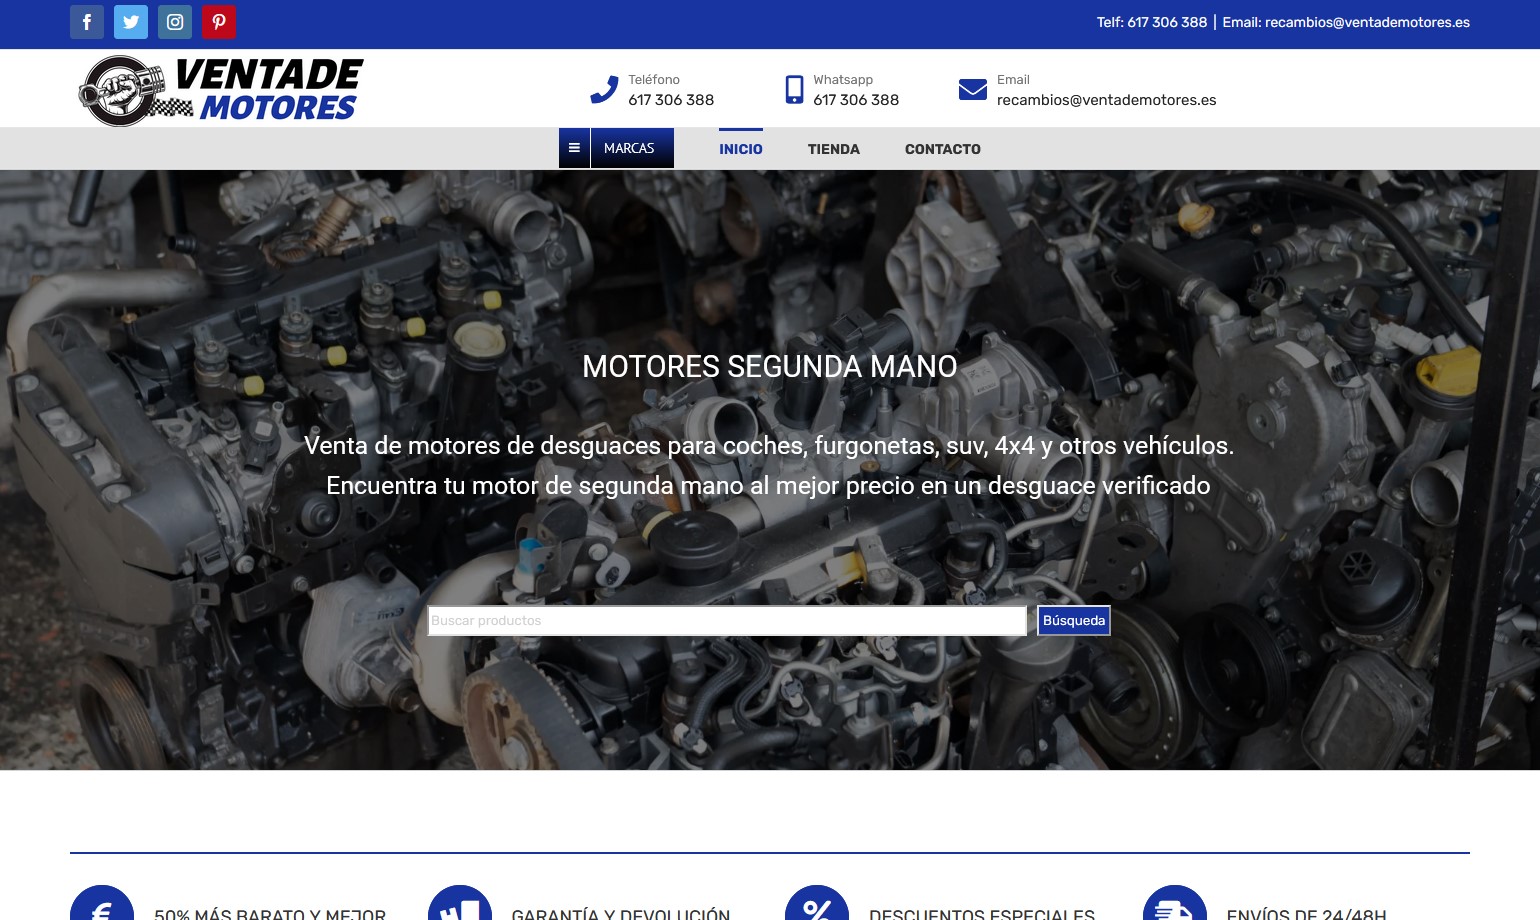 El motor Peugeot de segunda mano: eficiencia y confianza